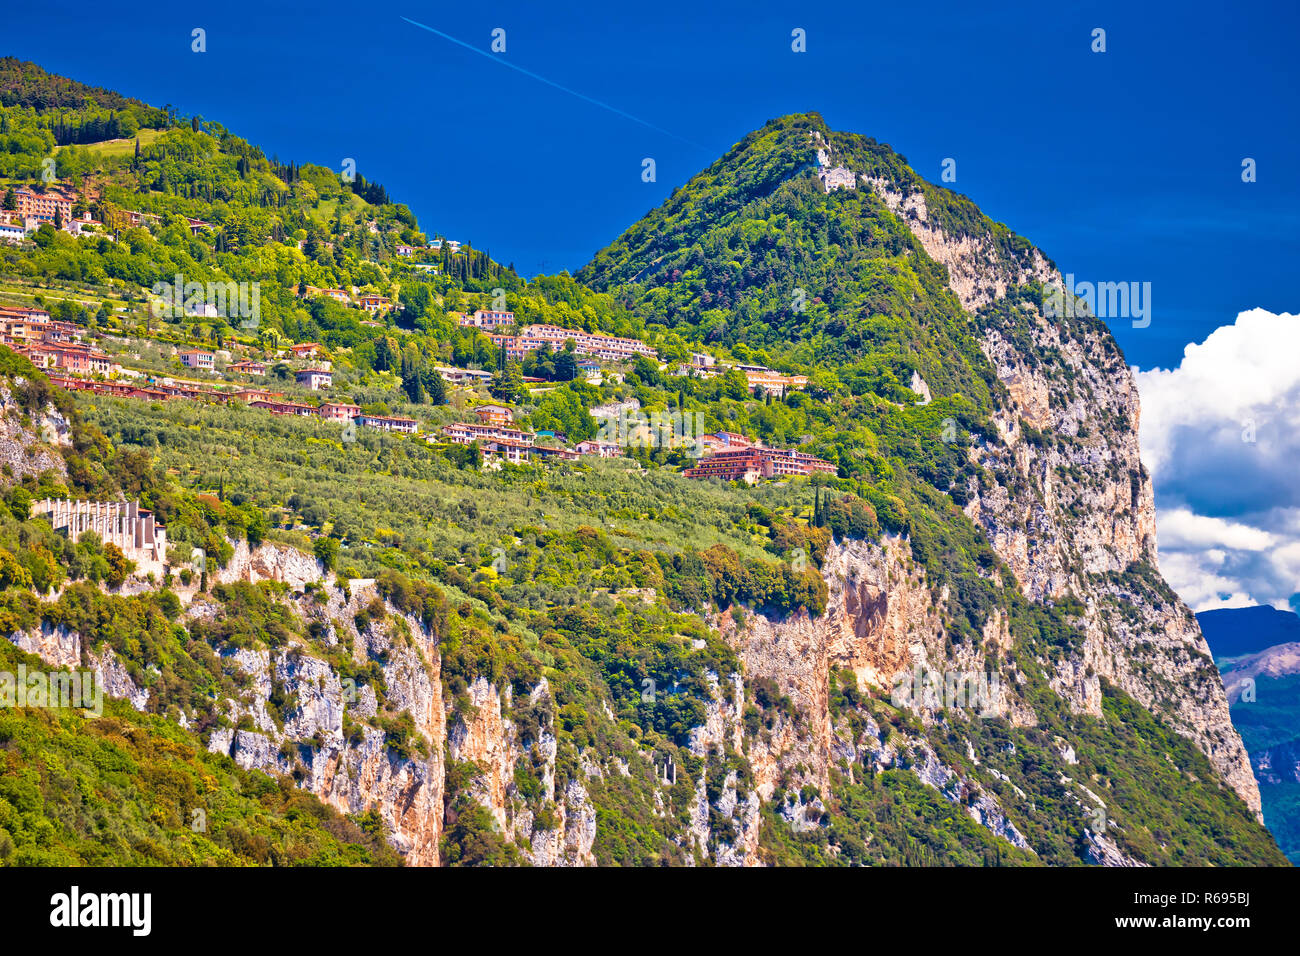 Garda lak cliffside villages of Gardola and Oldesio with Madonna di Montecastello hermitage on the ridge Stock Photo